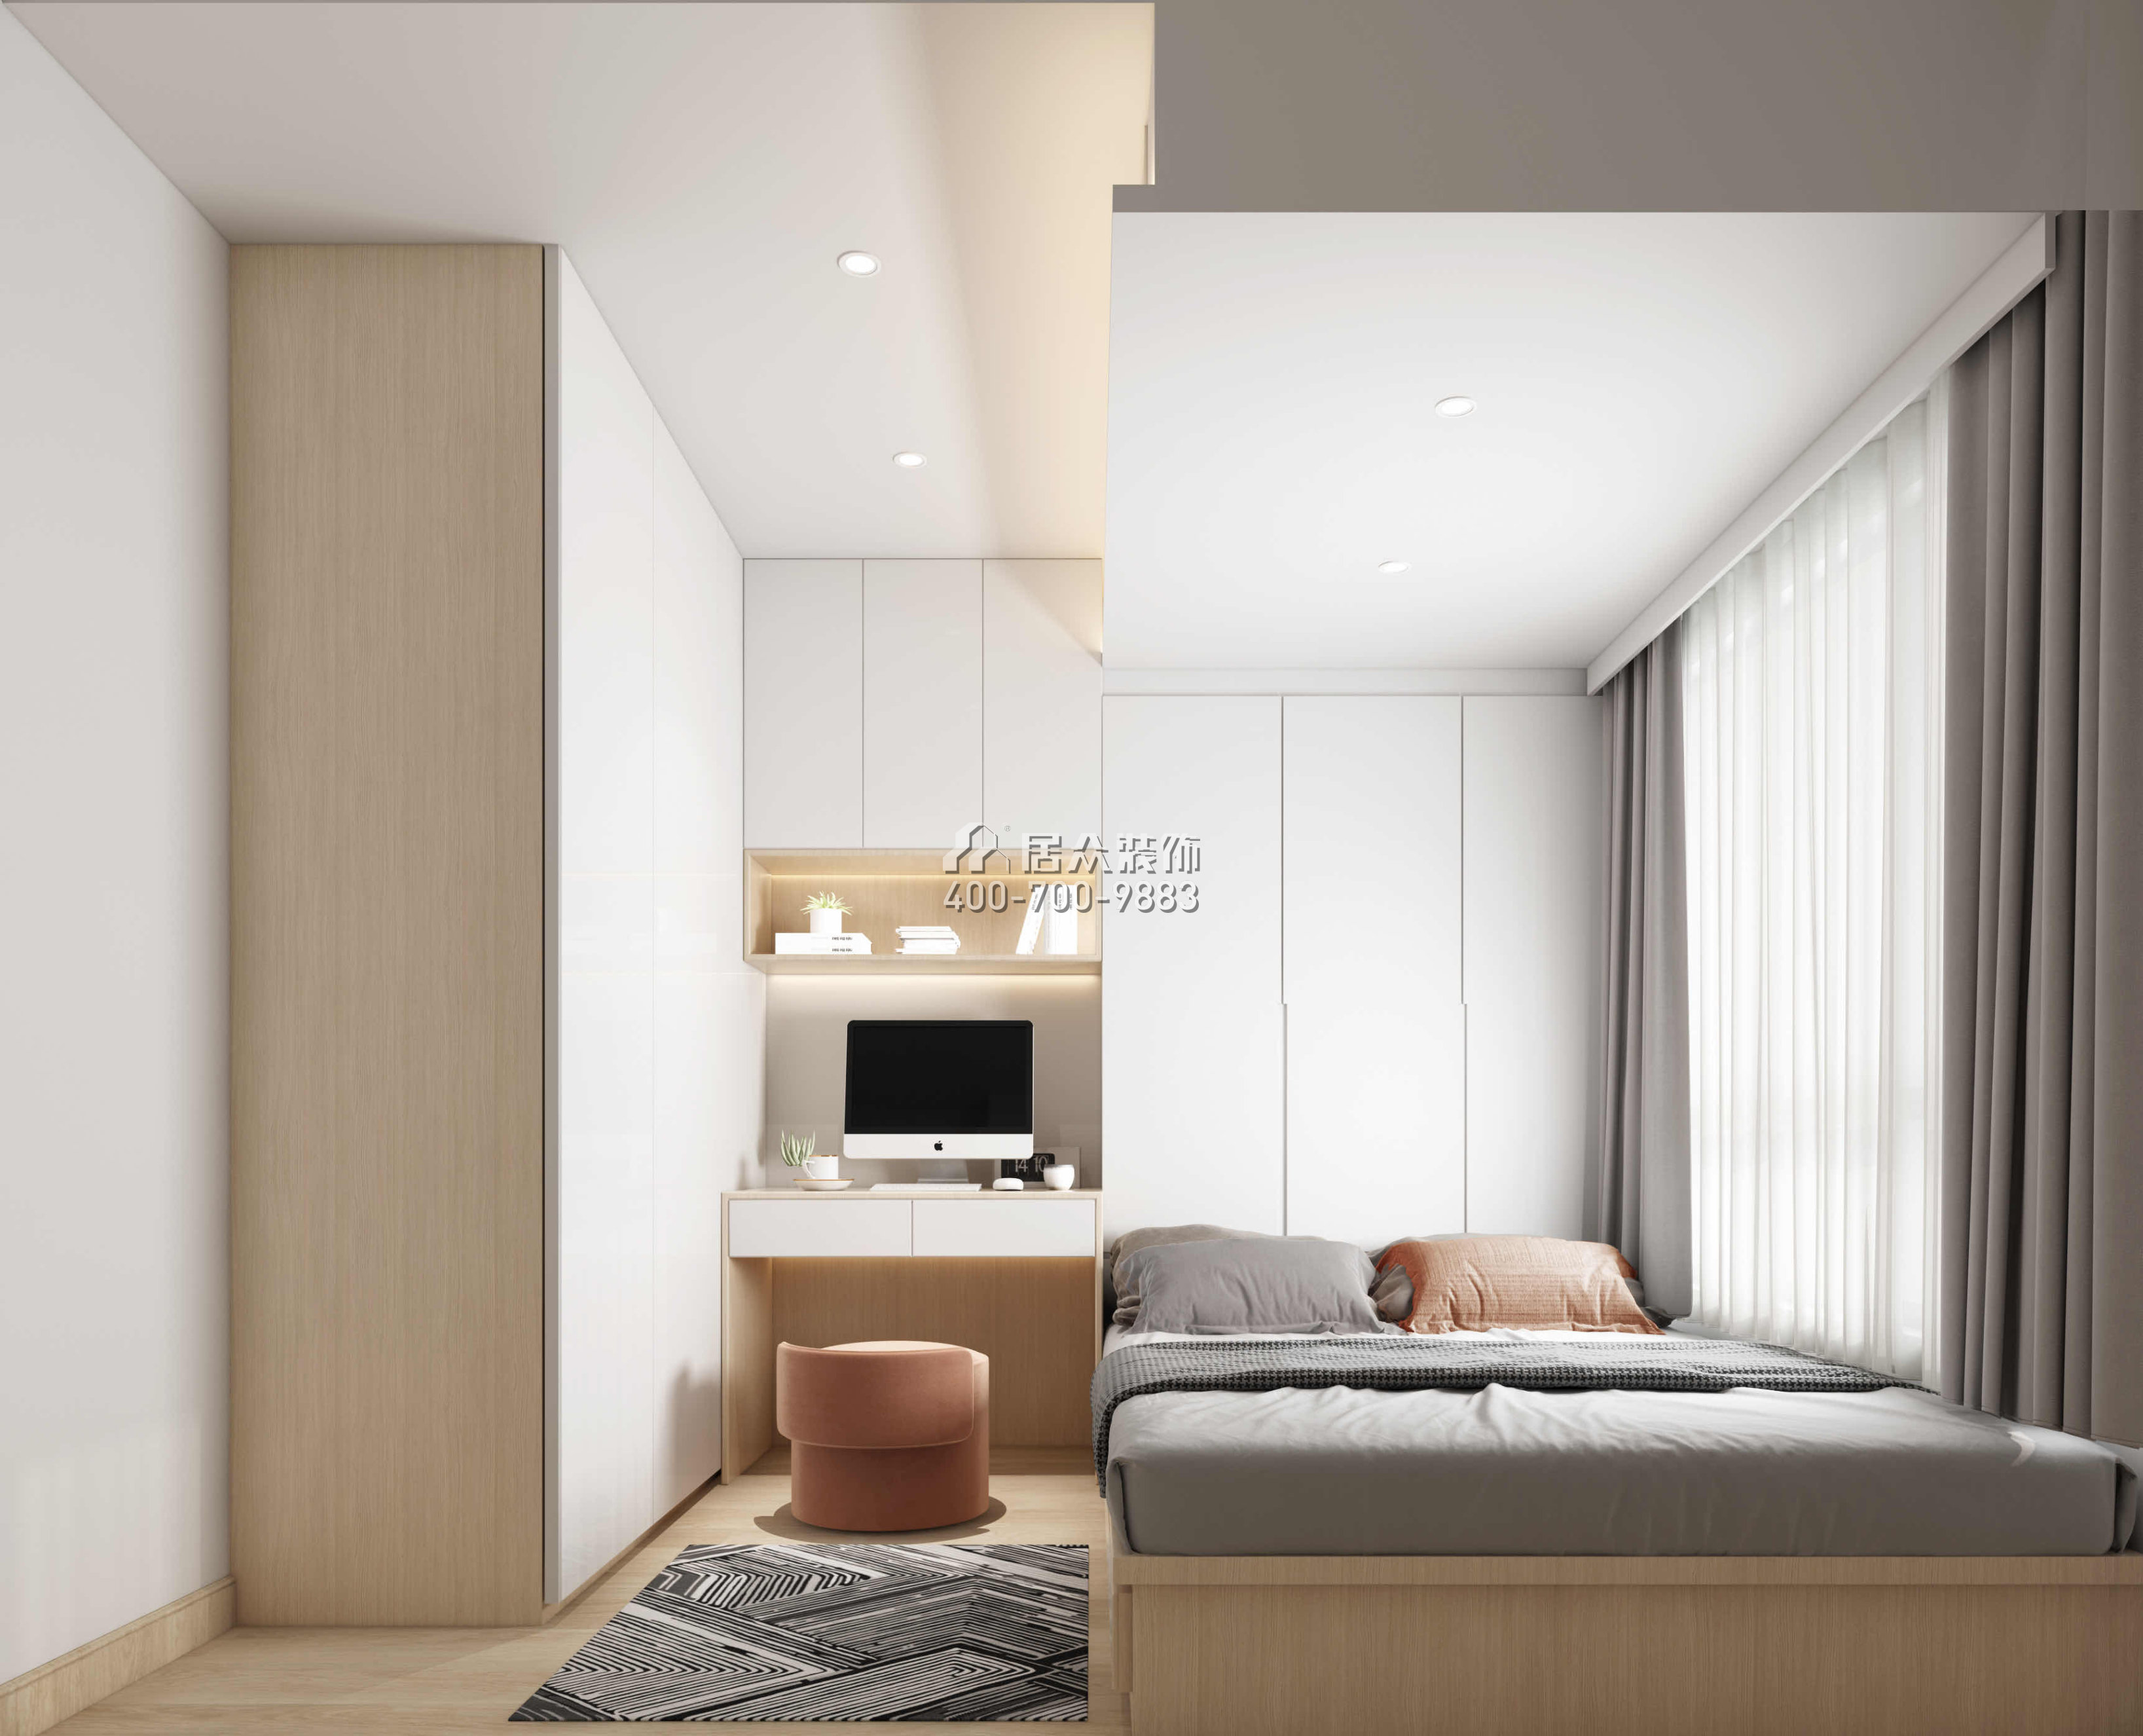 星河天地89平方米現代簡約風格平層戶型臥室裝修效果圖